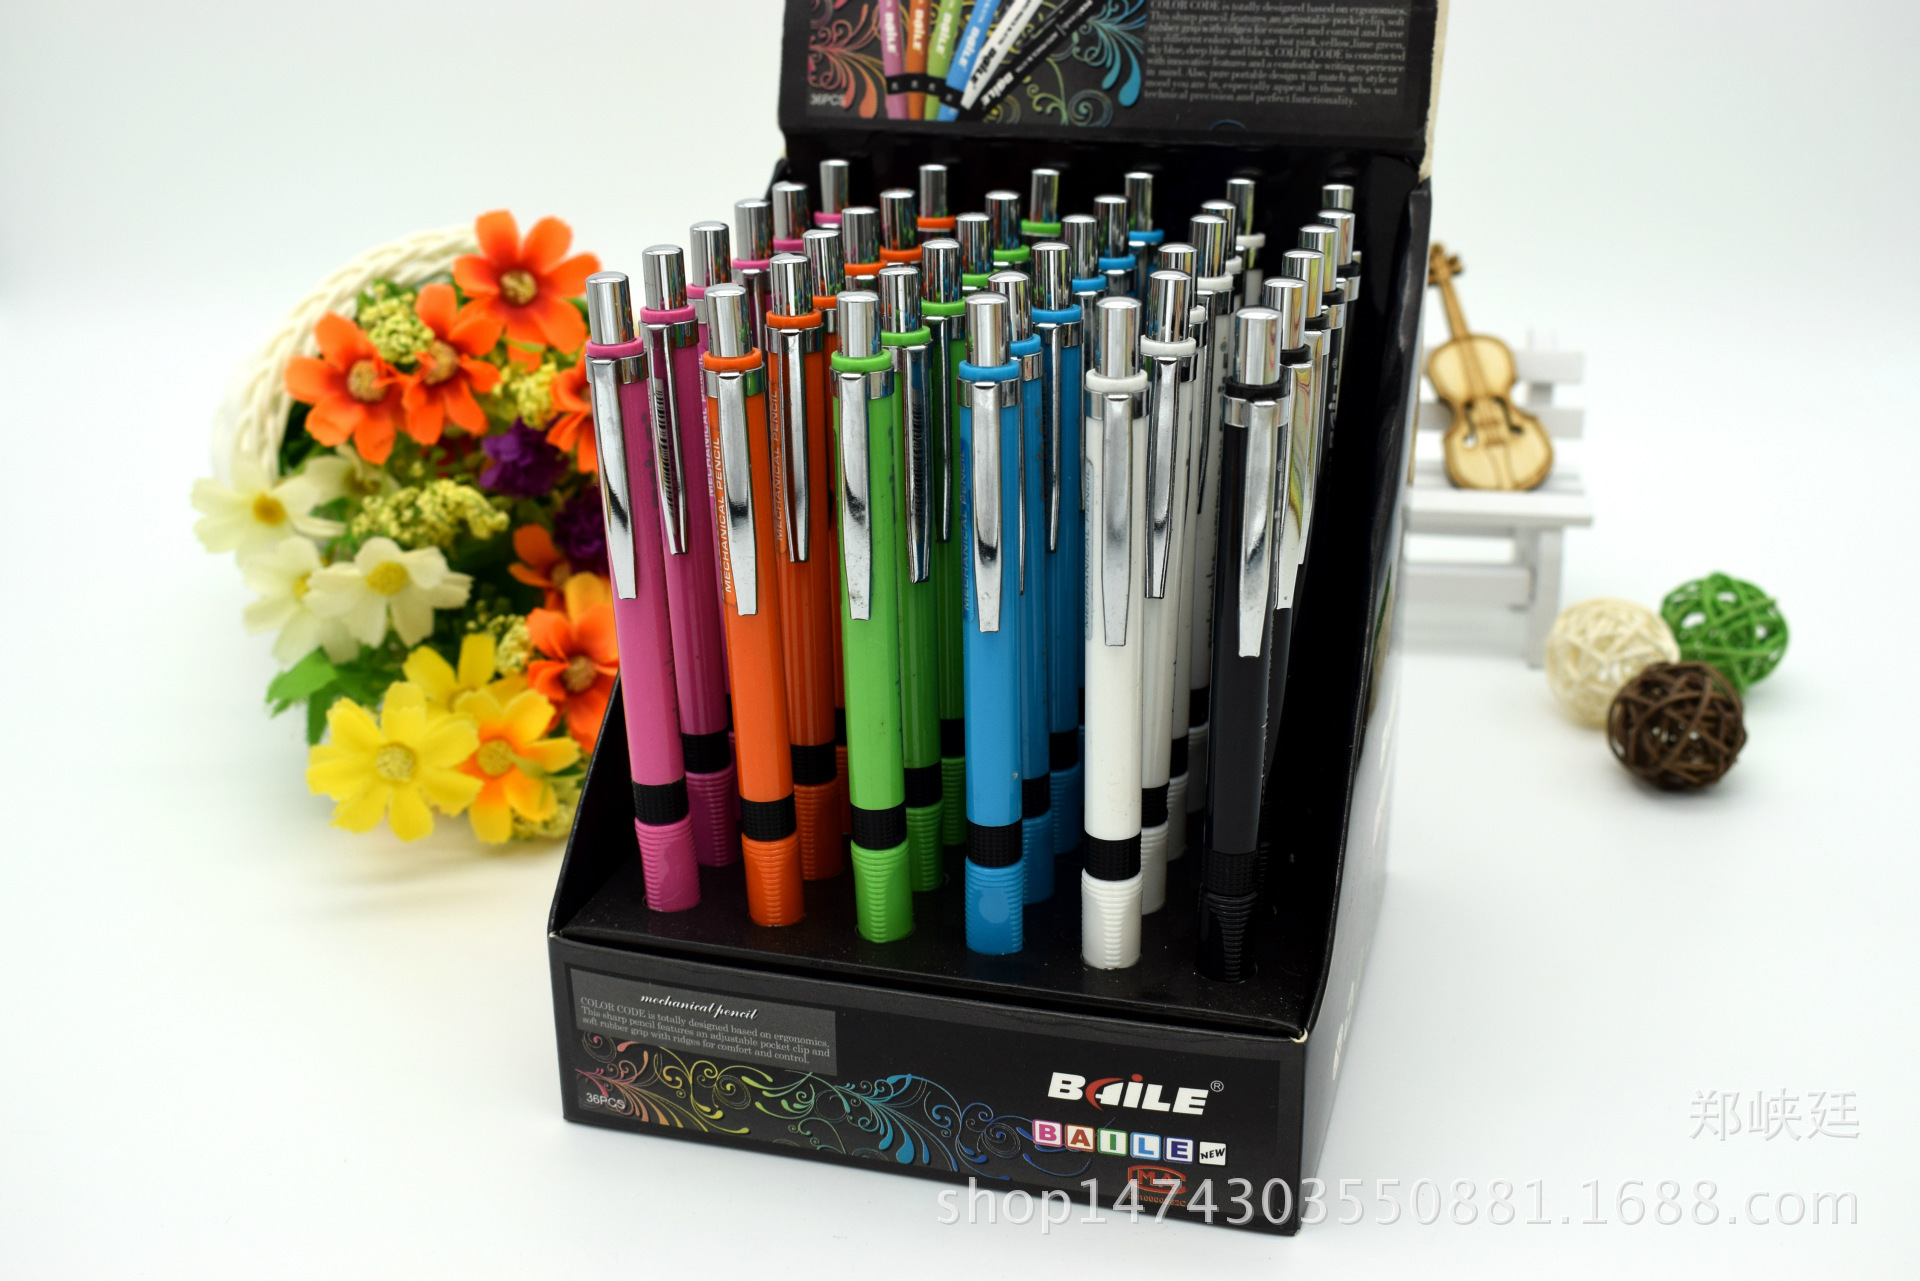 百樂文具BL-5190.5彩色活動鉛筆